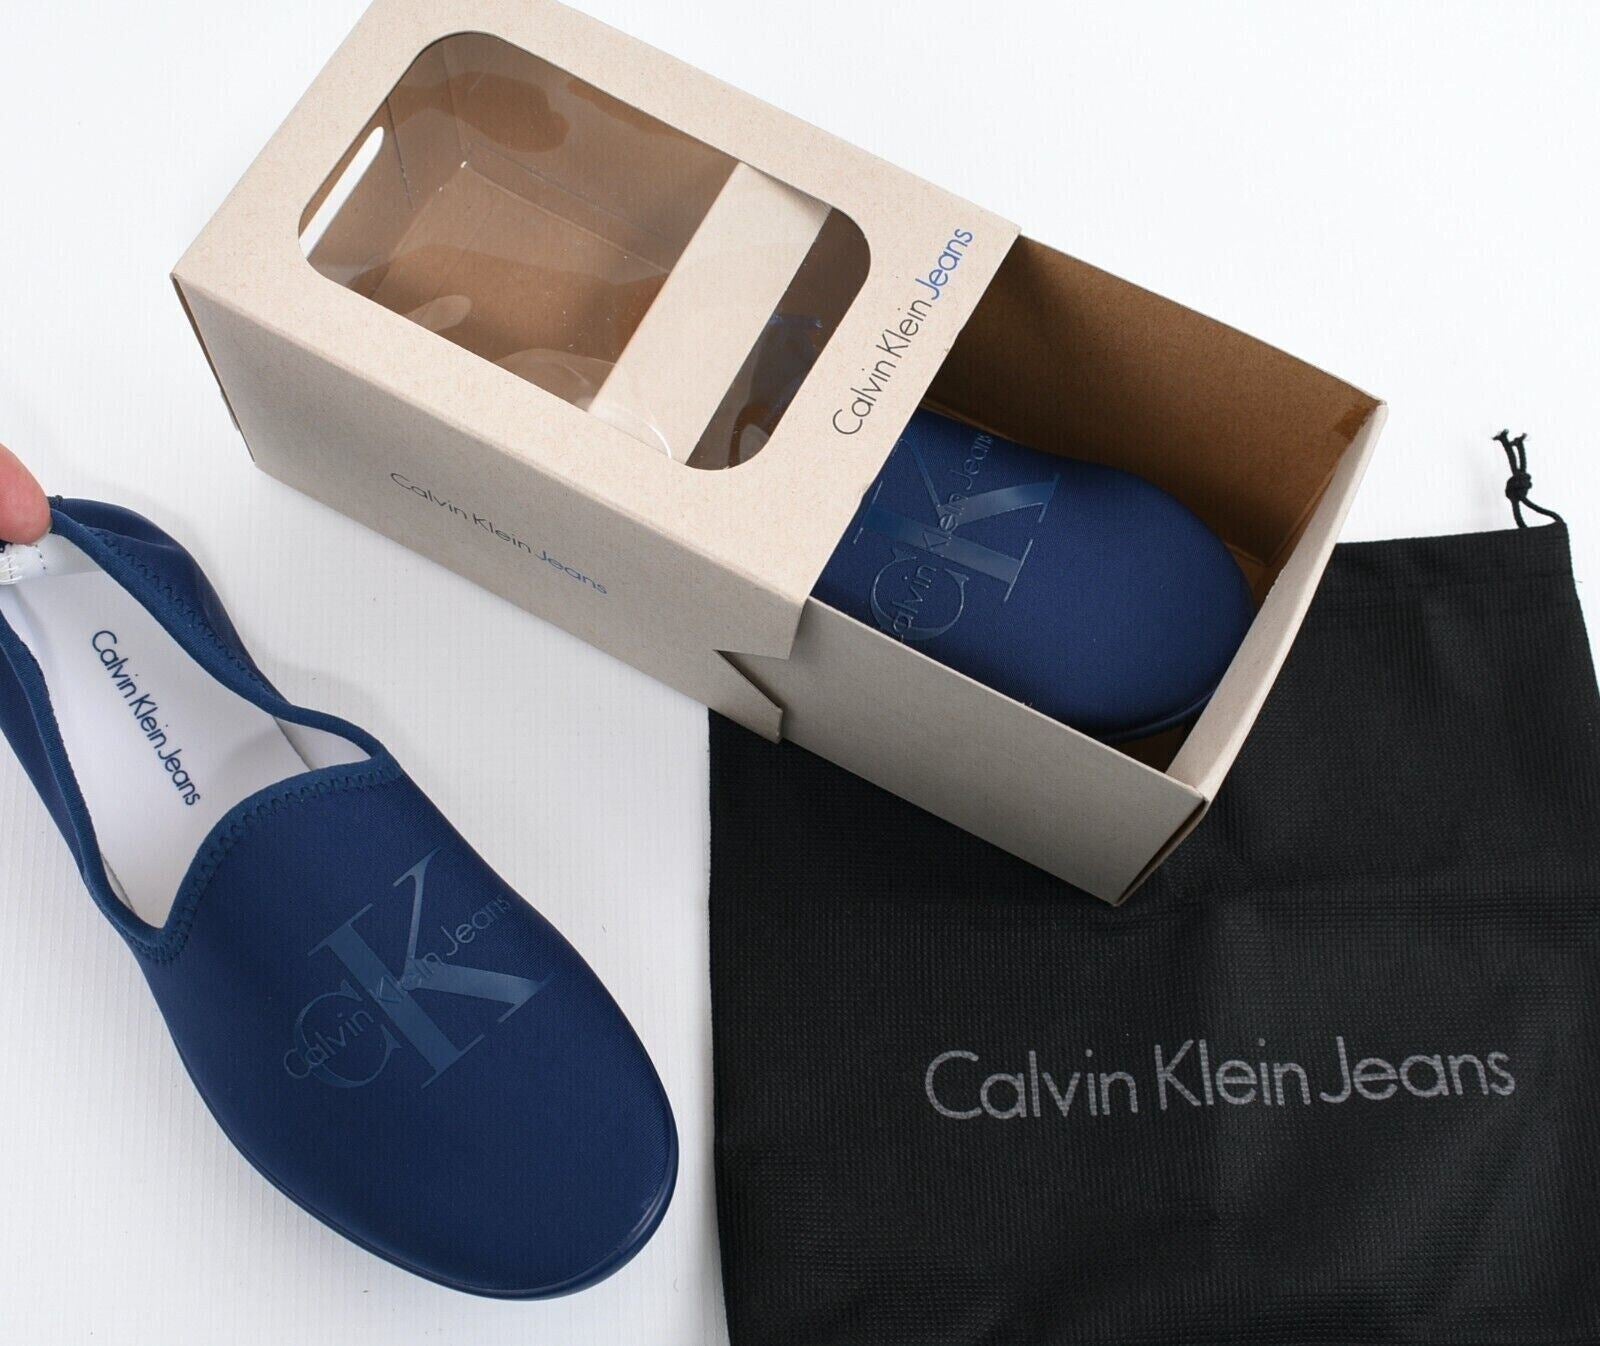 CALVIN KLEIN JEANS Womens TRACY Neoprene Slippers, Blue/White, size S (UK 4)